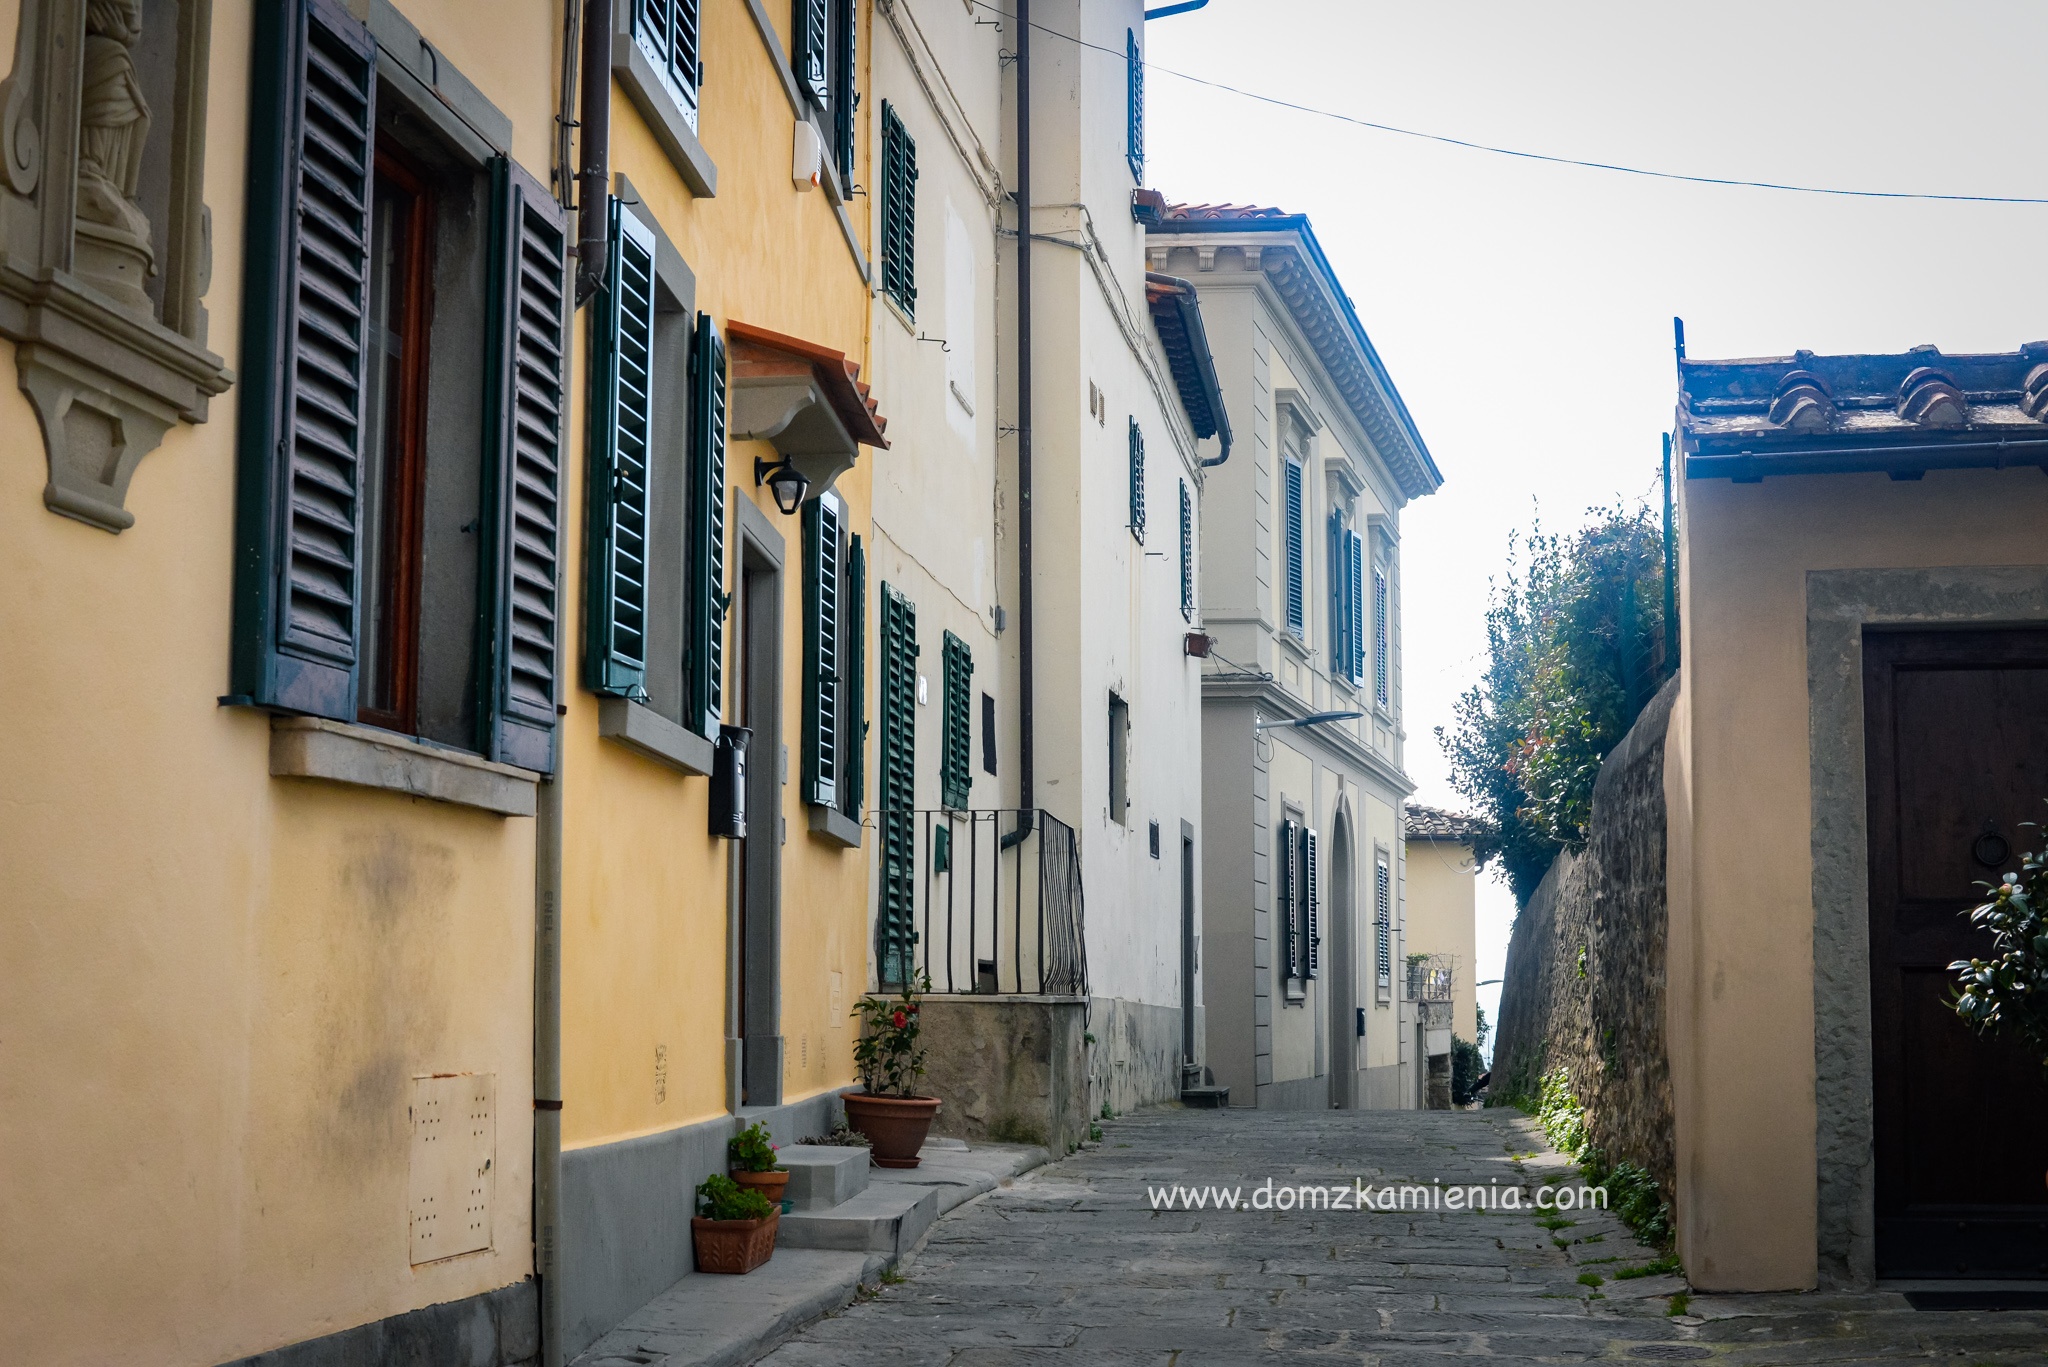 Dom z Kamienia - blog o życiu w Toskanii, Settignano